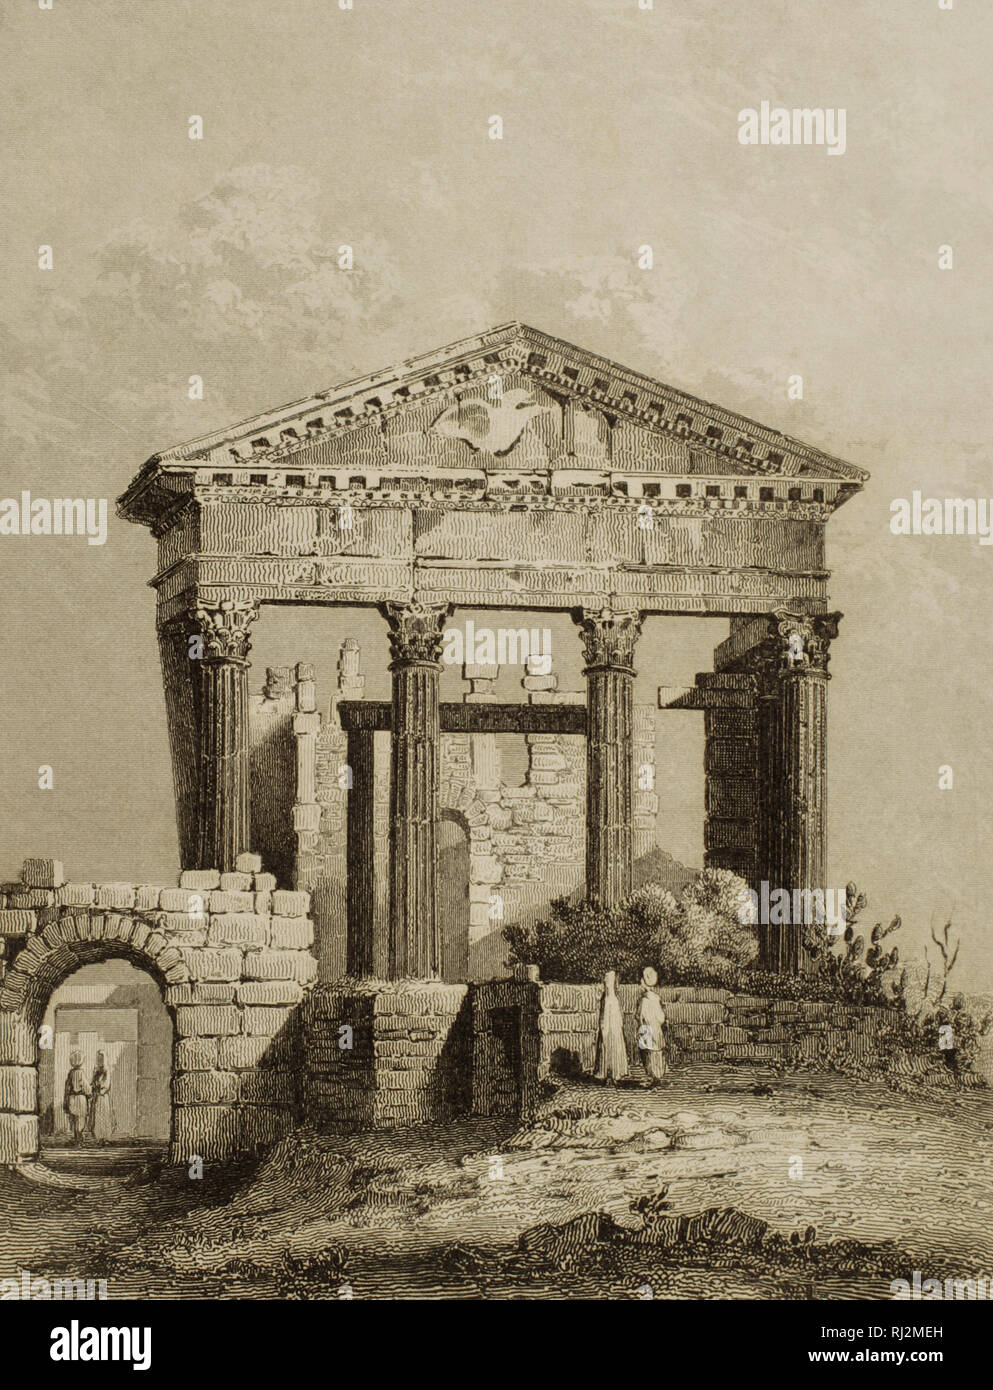 Tempel von Ugga, antiken Stadt Karthago. Lemaitre Direxit. Gravur. Panorama Universal. Geschichte von Karthago, 1850. Stockfoto